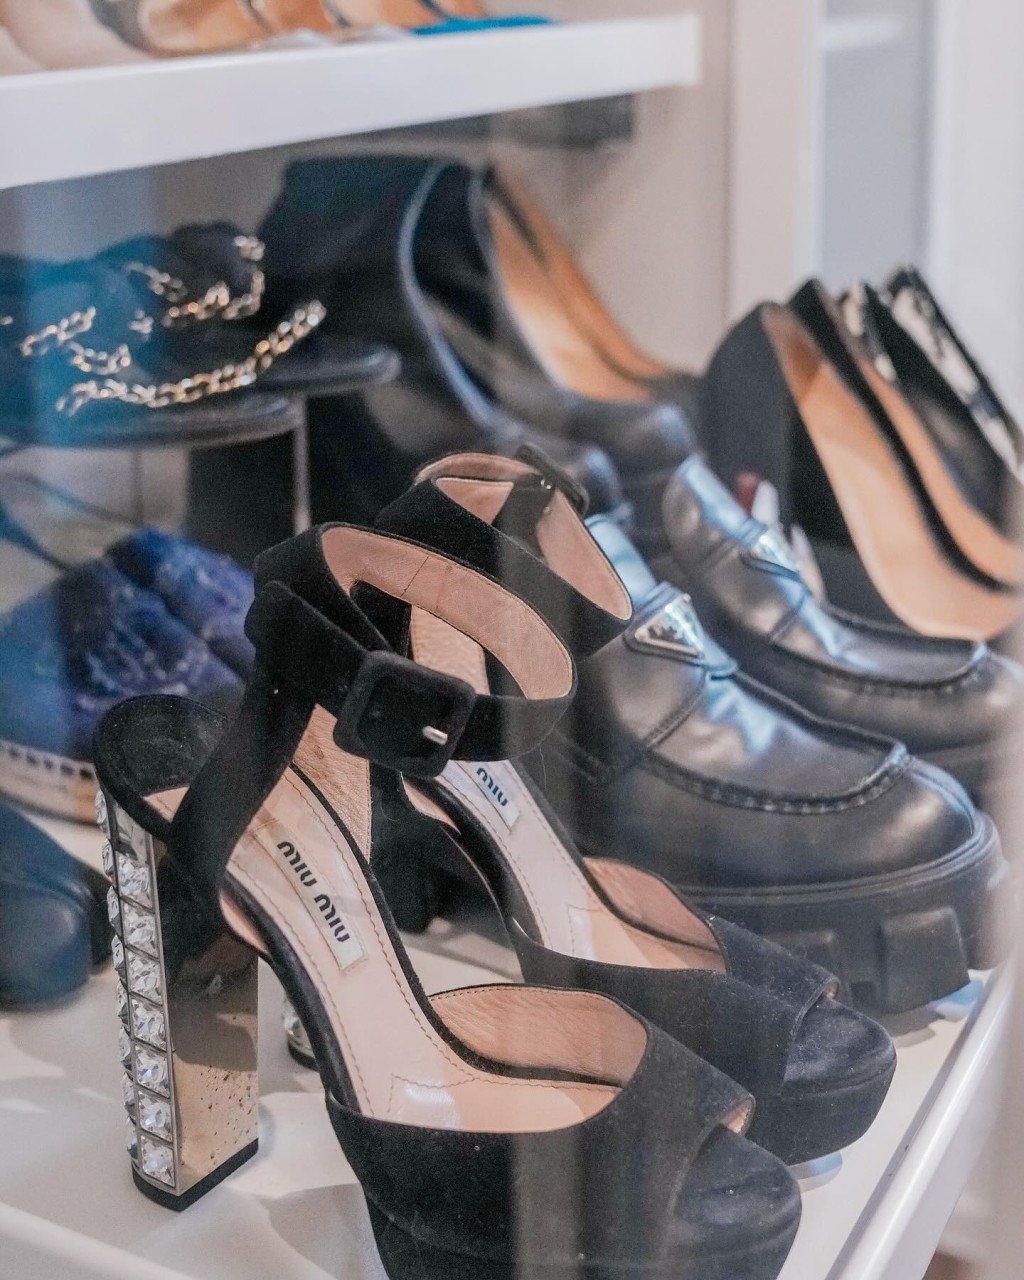 下層擺放Chanel、Prada、Miu Miu等高踭鞋及皮鞋。